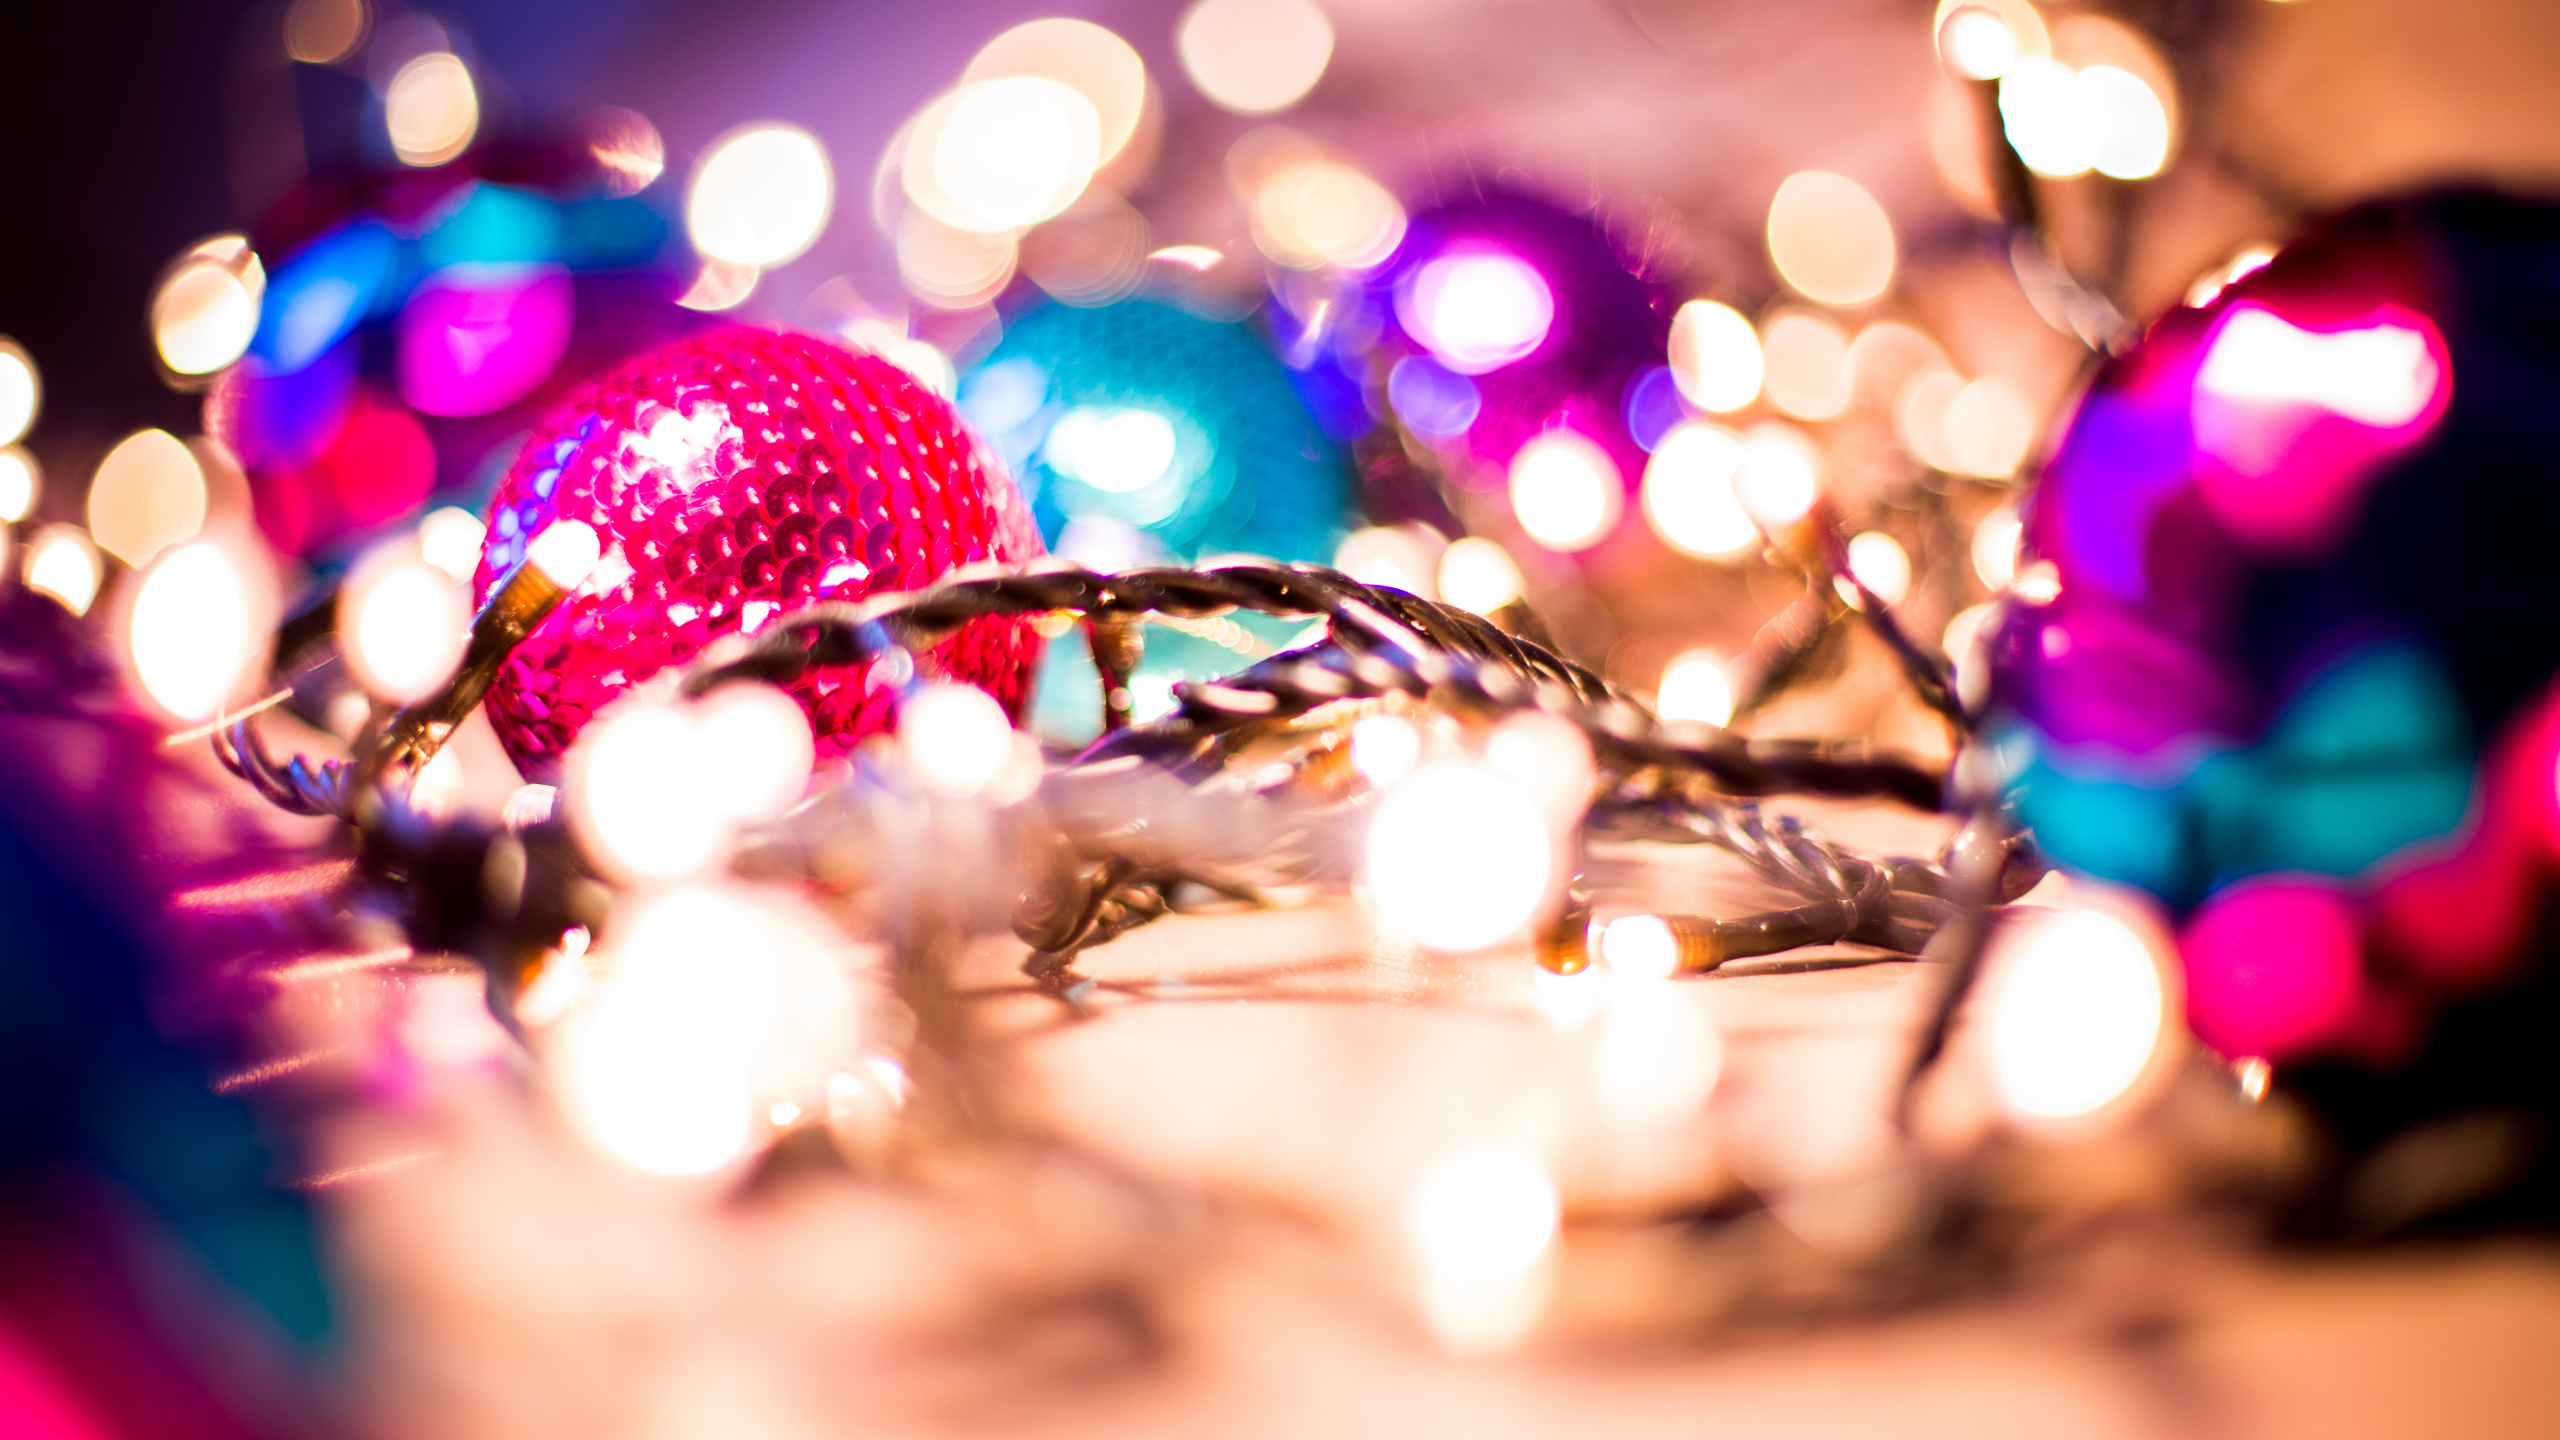 Le Jour De Noël, Noël et Les Fêtes, Les Lumières de Noël, Pink, Lumière. Wallpaper in 2560x1440 Resolution